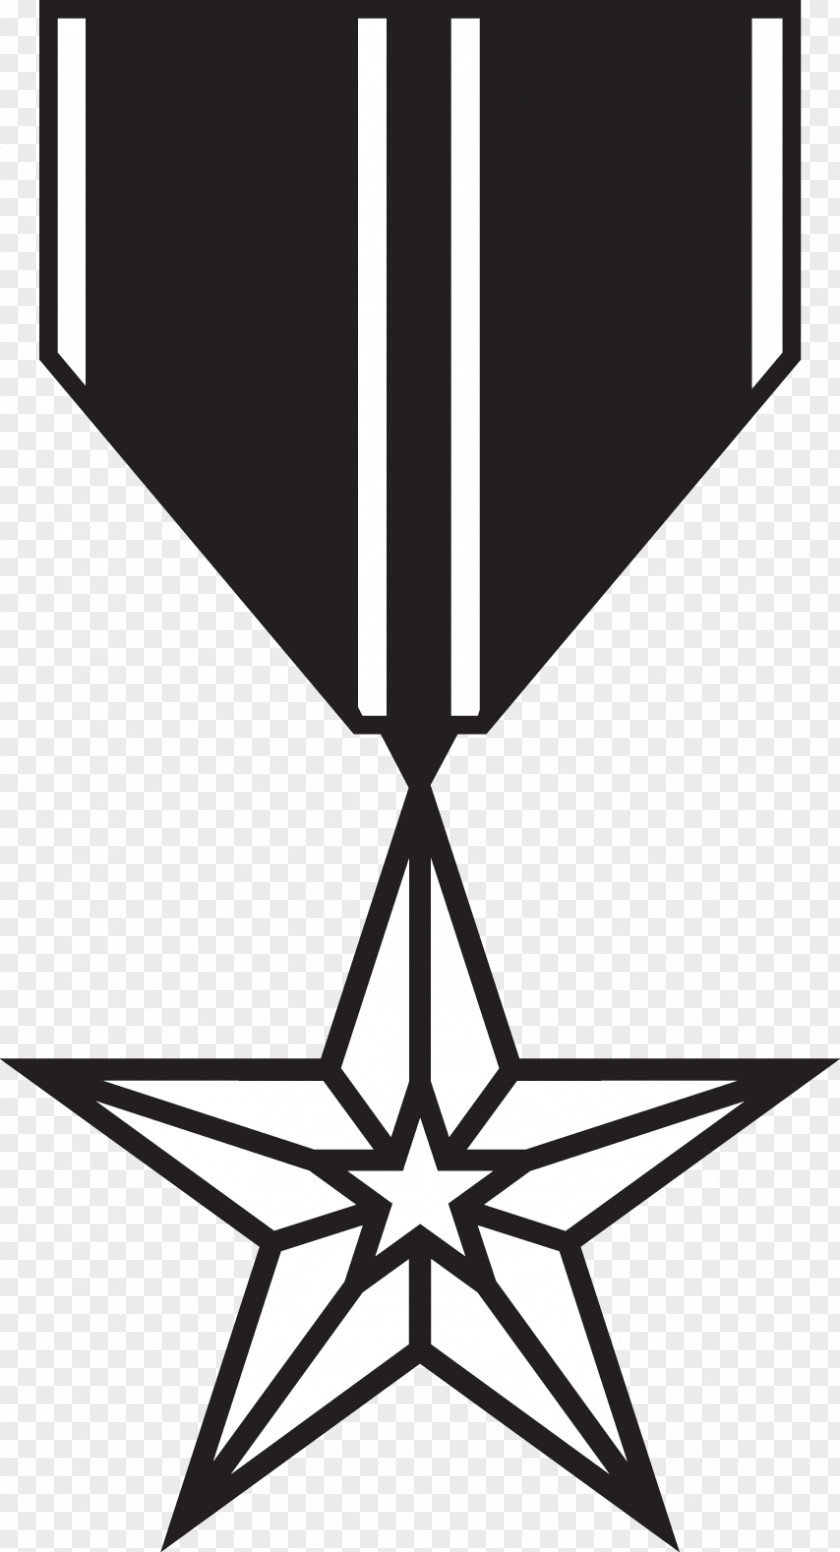 Militia Insignia Vector Graphics Illustration Symmetry Clip Art Image PNG